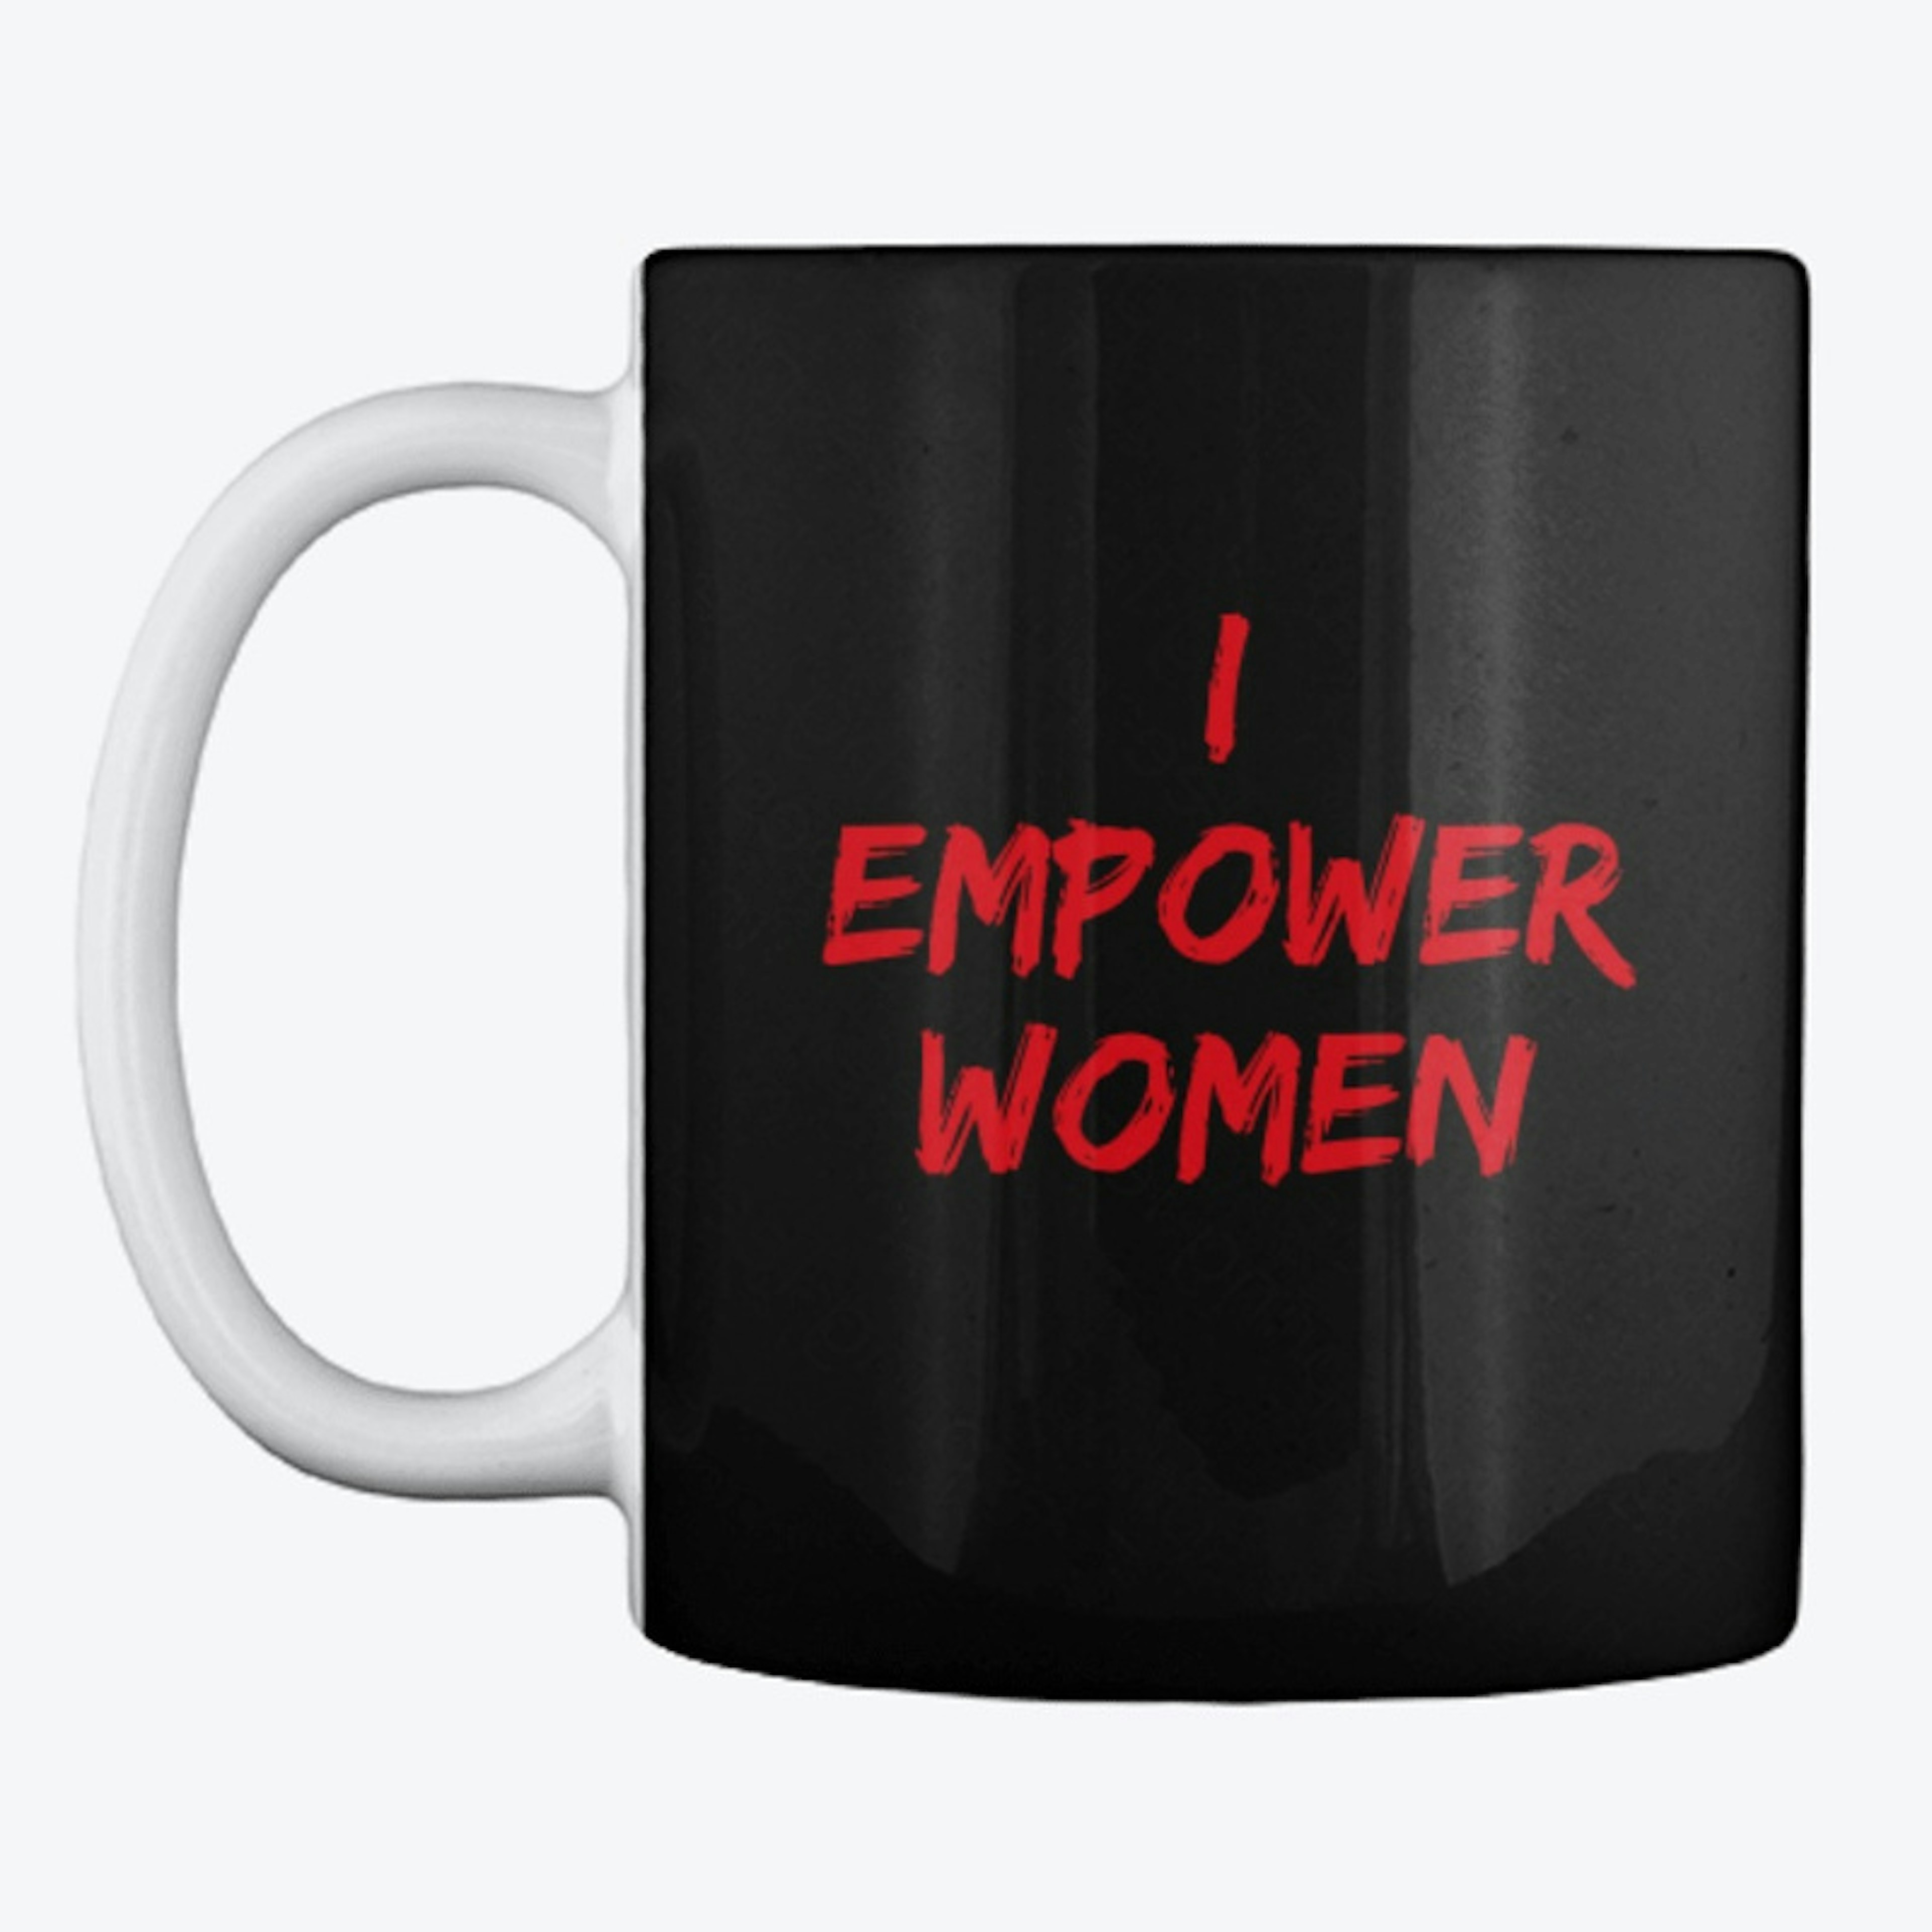 I empower women